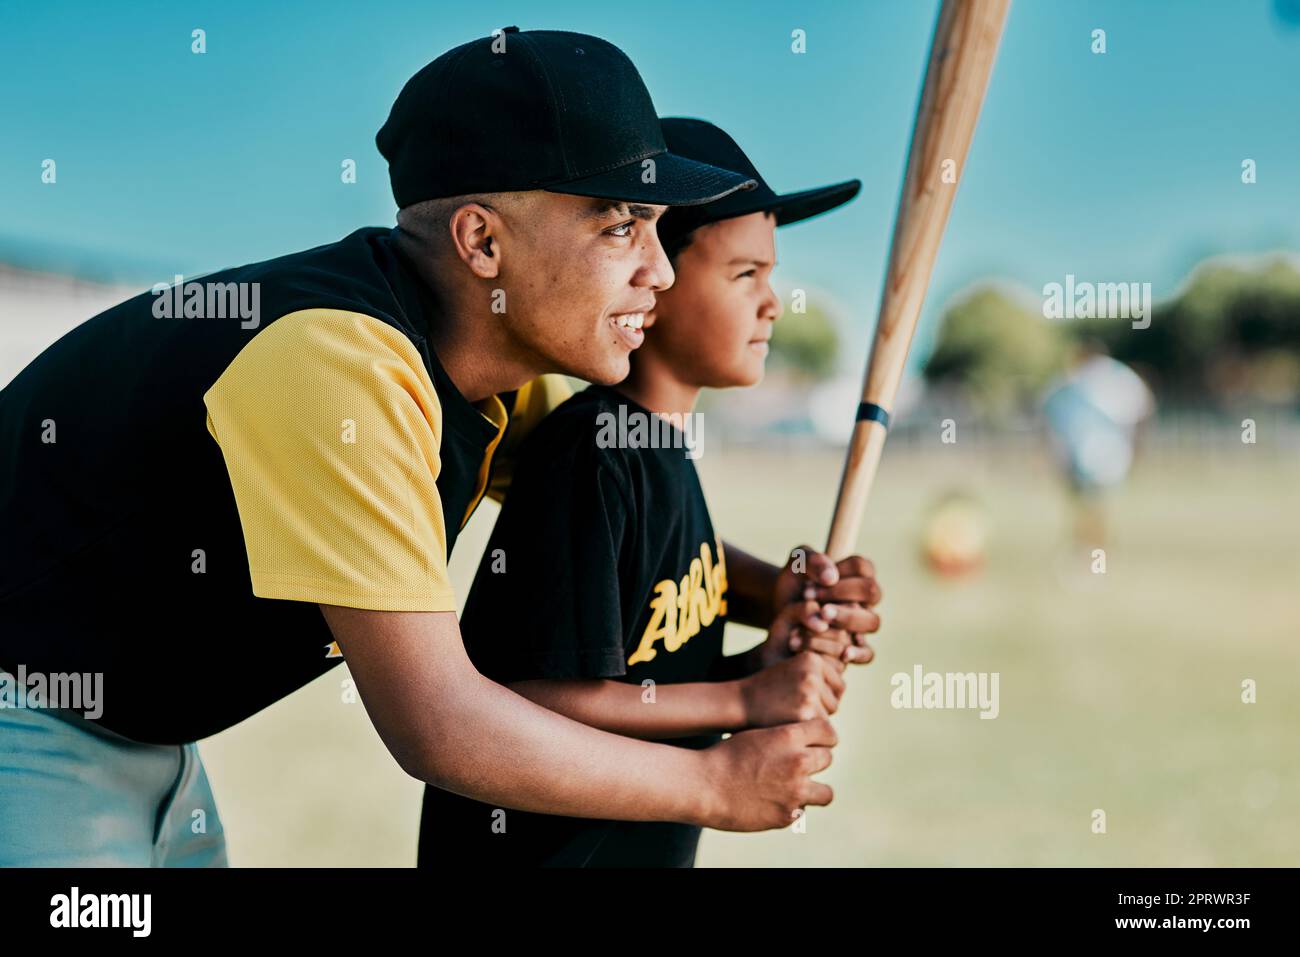 Ein junger Baseballspieler zeigt einem kleinen Jungen, wie man spielt. Stockfoto